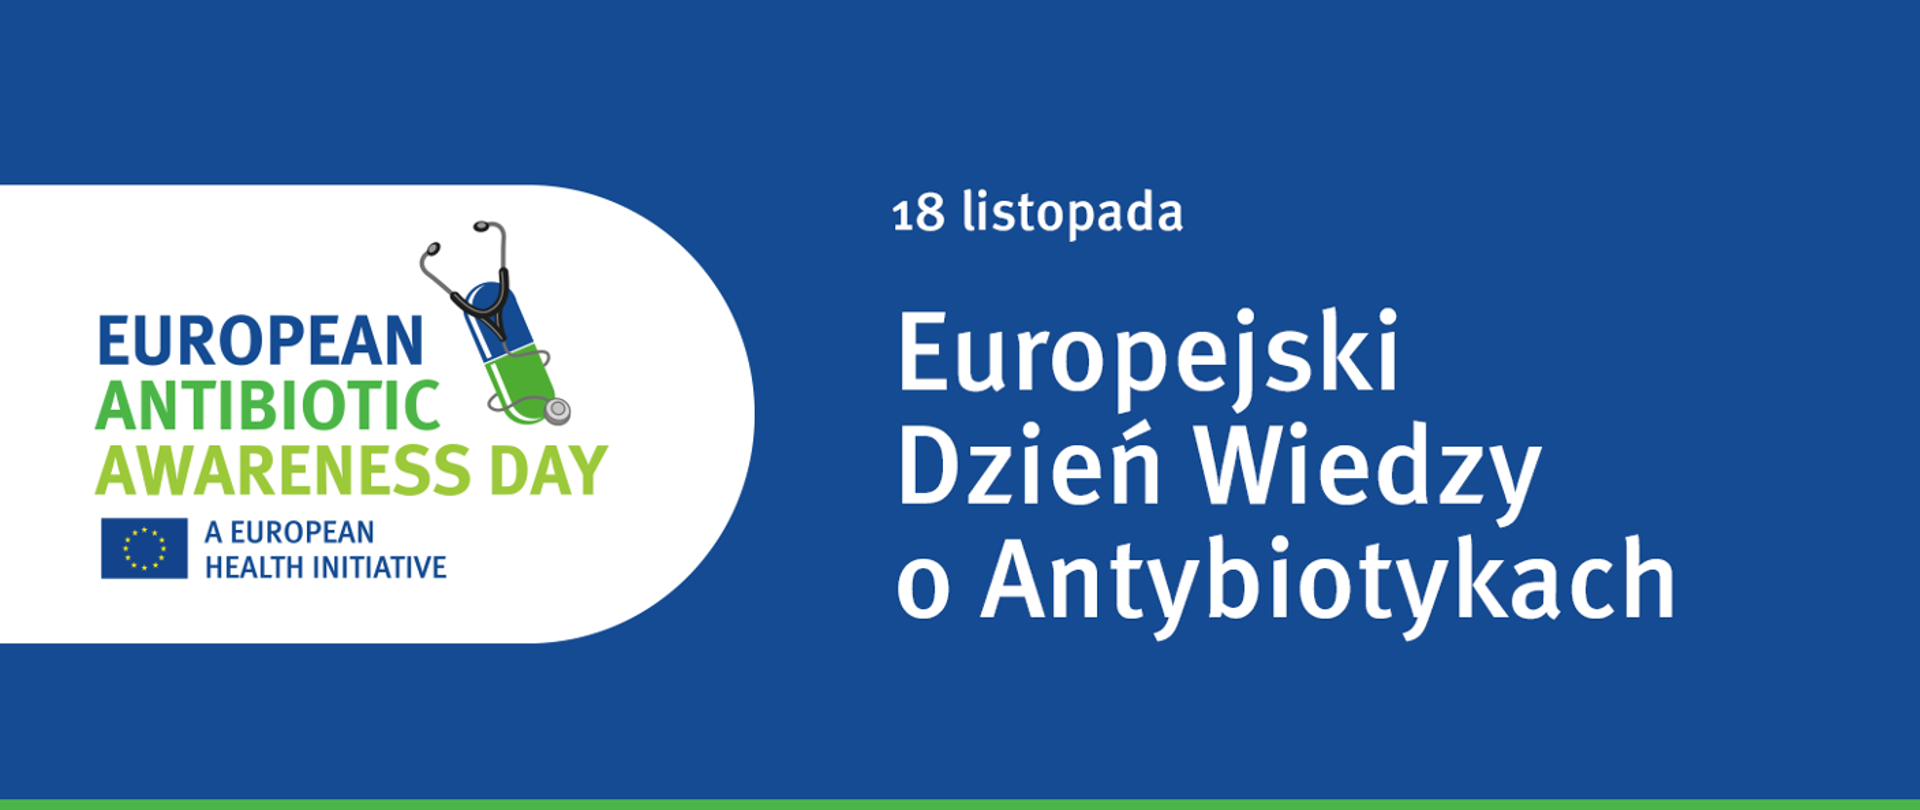 Grafika ilustracyjna: Europejski Tydzień Wiedzy o Antybiotykach